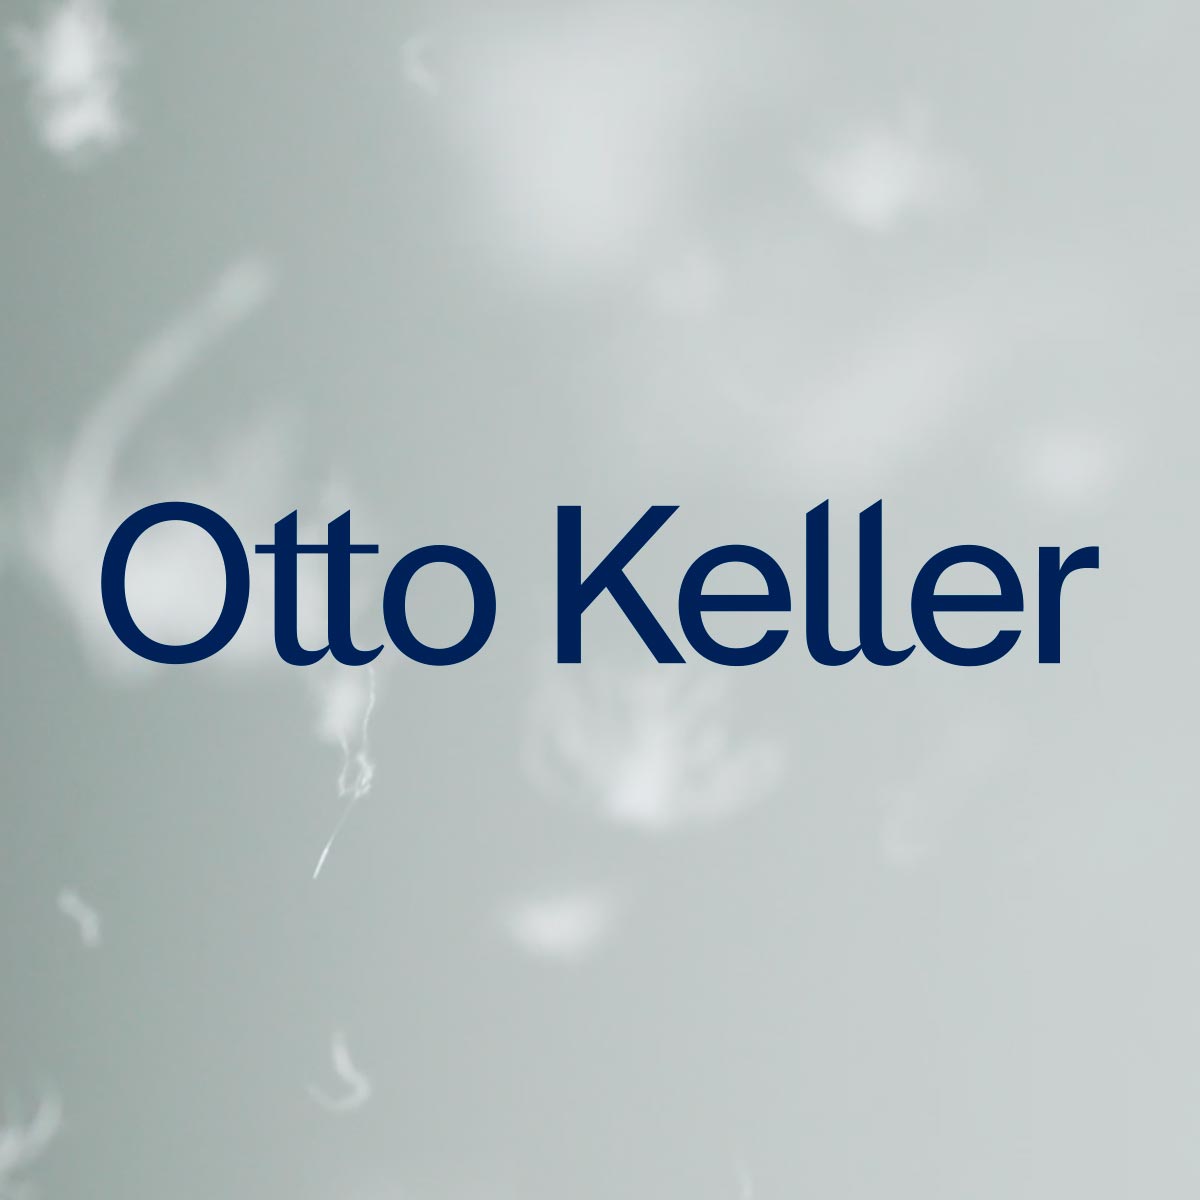 Otto Keller | Kissen und Daunendecken Hersteller. Erstklassige